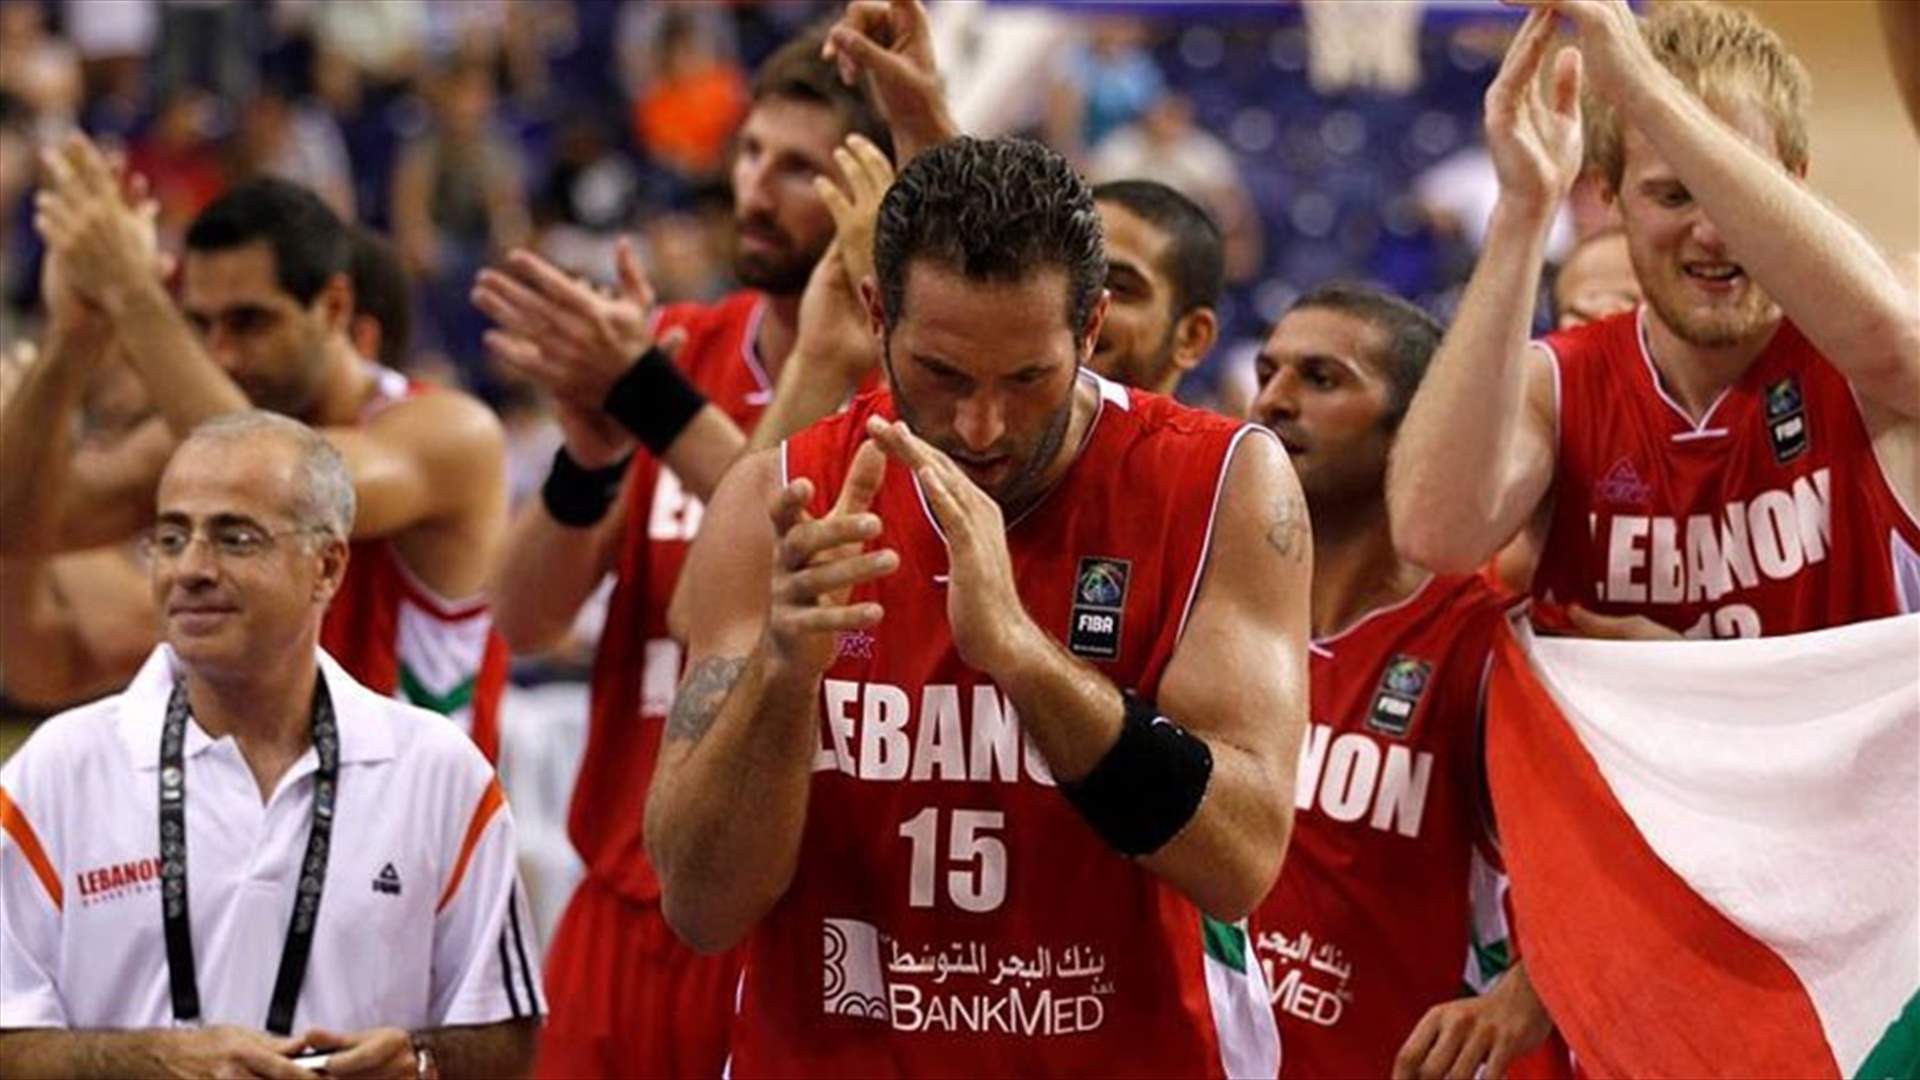 فوز لبنان بحق استضافة كأس آسيا لكرة السلة 2017 في  آب 